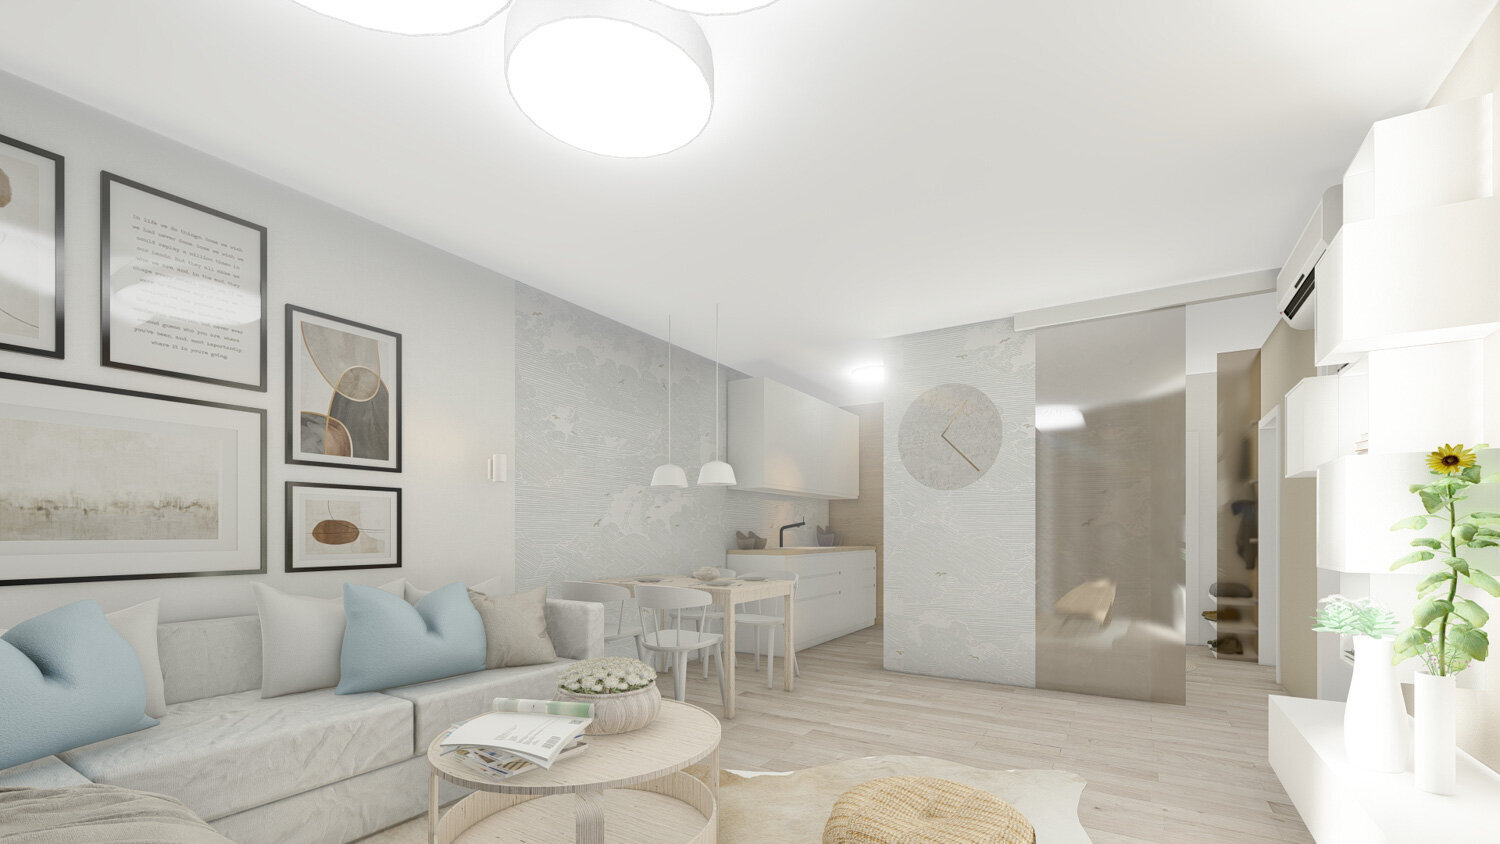 návrh interiéru malého bytu pro azyl ve městě